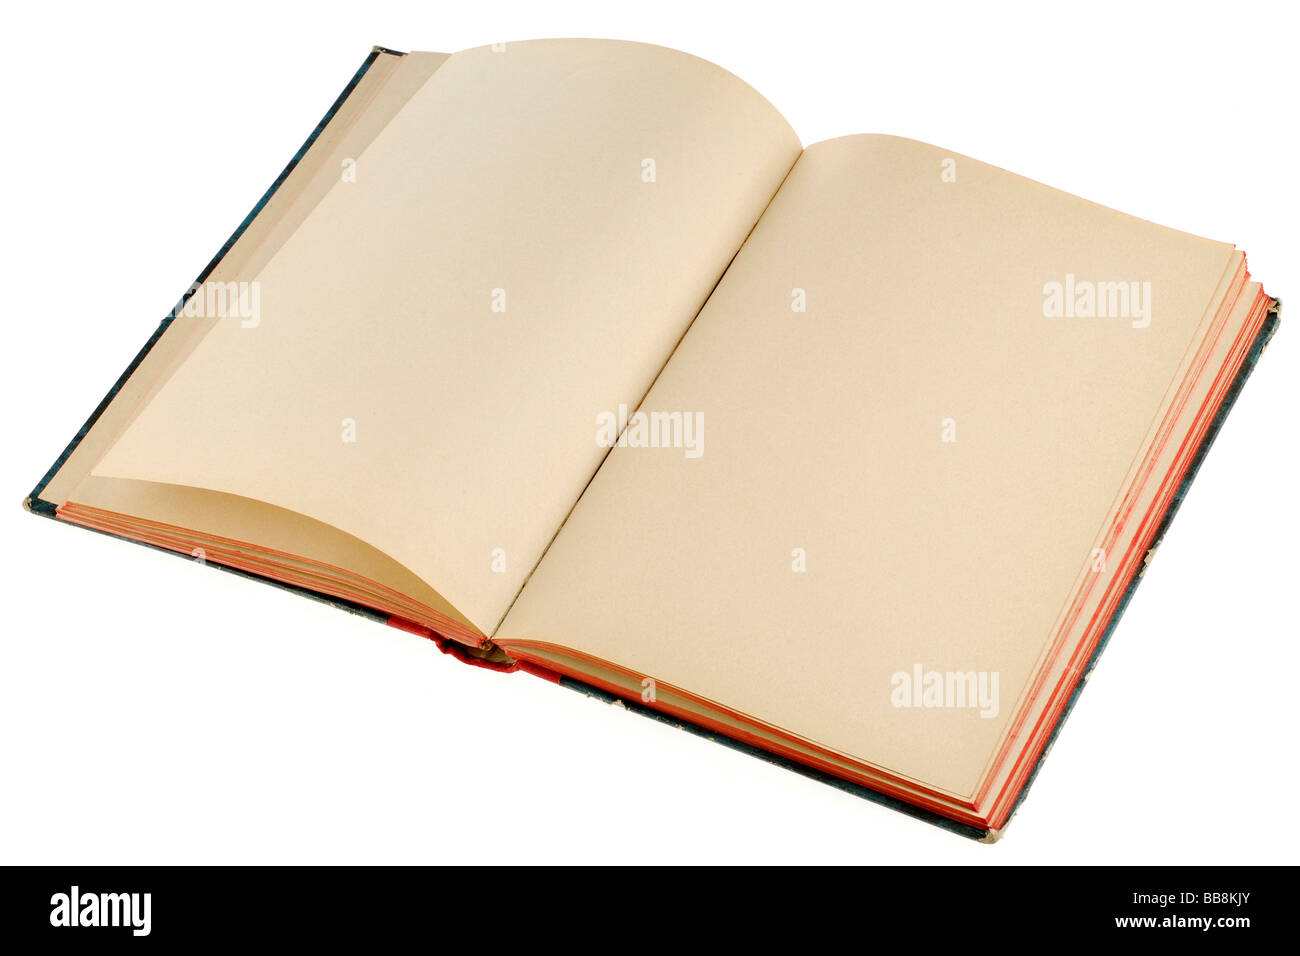 Un livre ouvert avec des pages blanches Banque D'Images